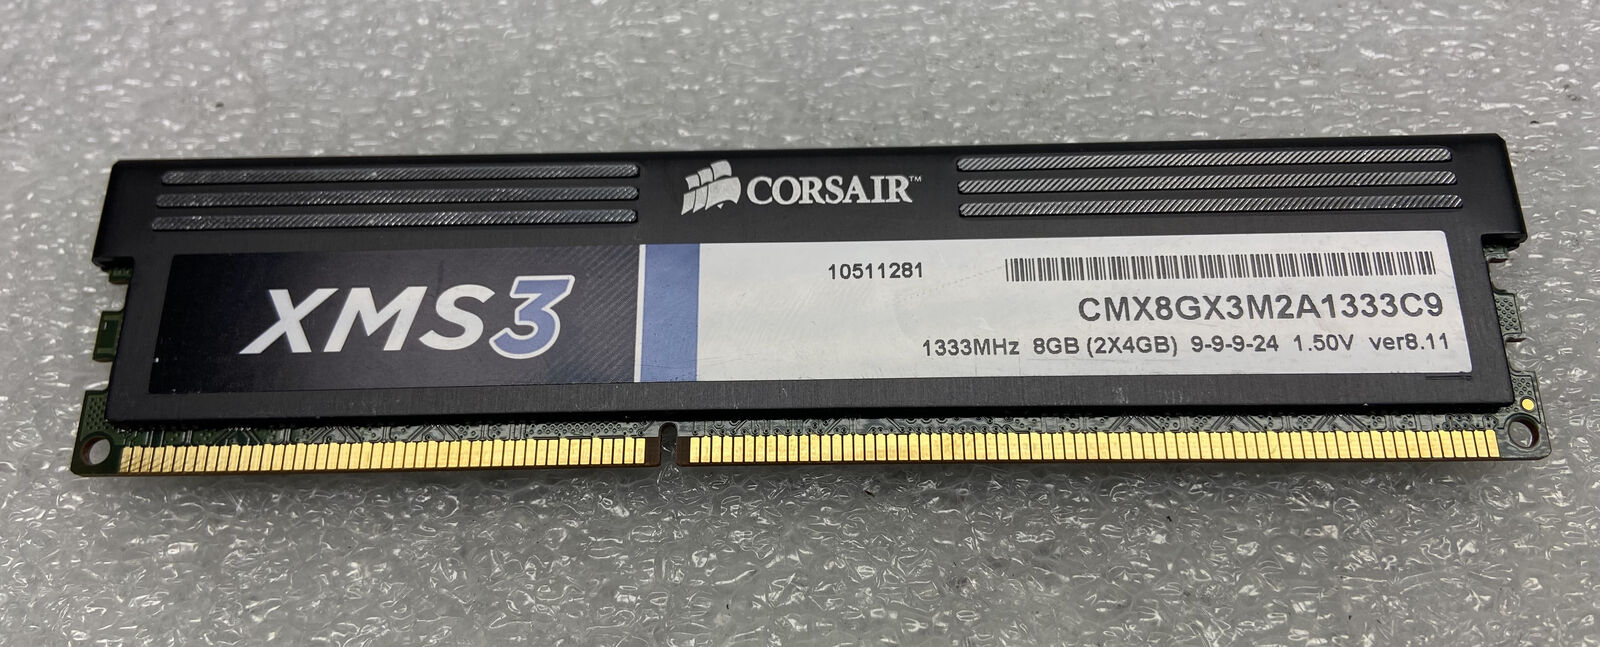 Lot of 6 CORSAIR XMS3 RAM DIMM 4GB 2Rx4 PC3-10600 CL9 non-ECC CMX8GX3M2A1333C9